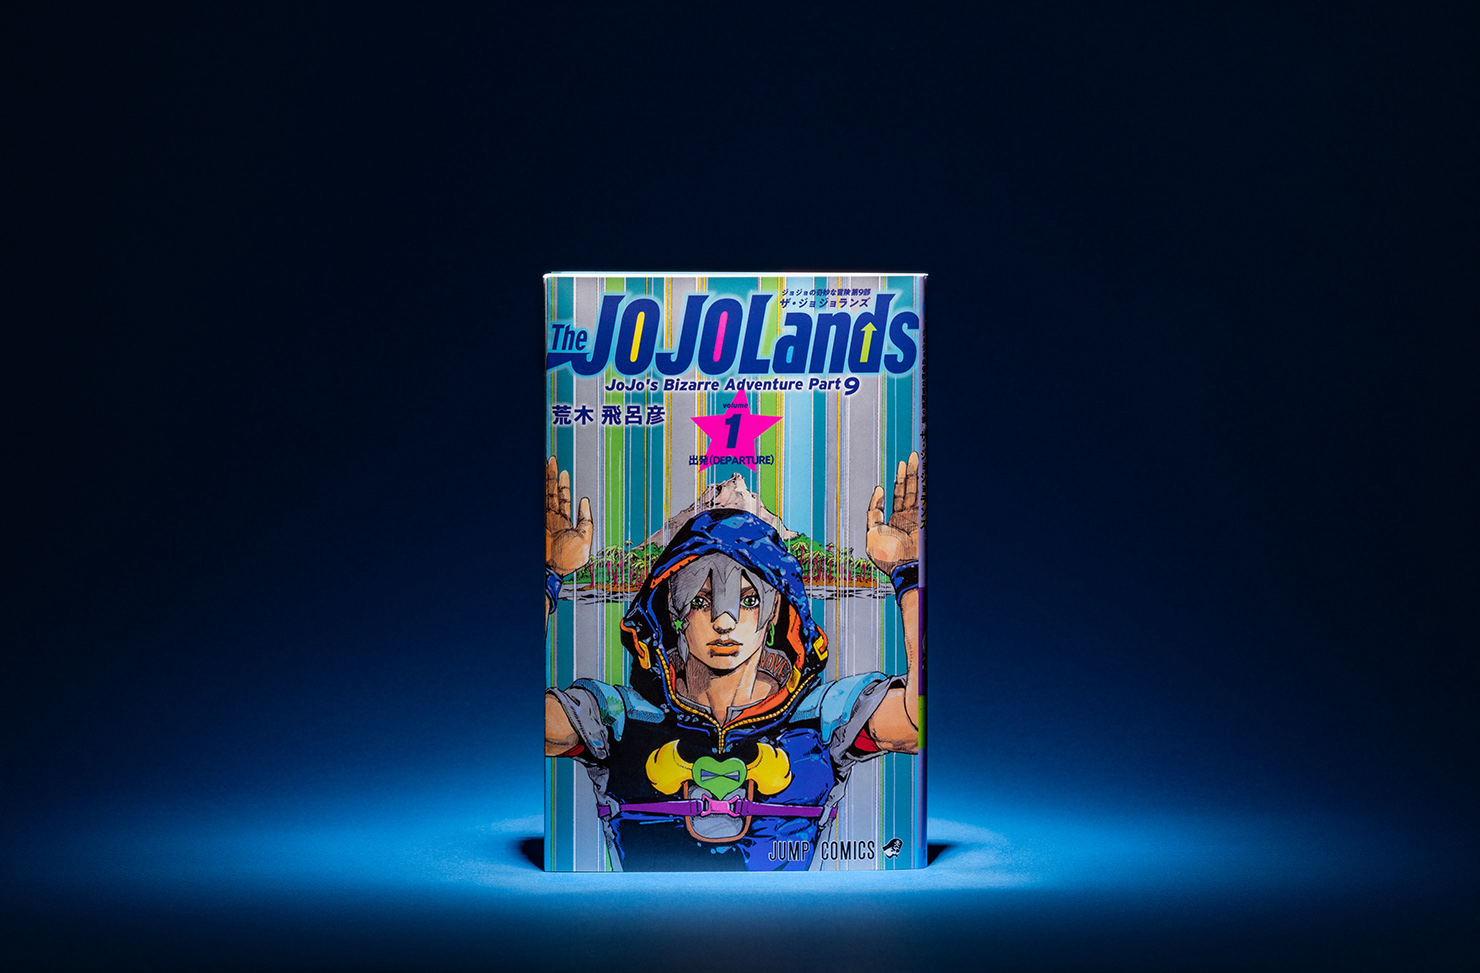 『ジョジョの奇妙な冒険 第9部 The JOJOLands』（ザ・ジョジョランズ）コミックスの第1巻